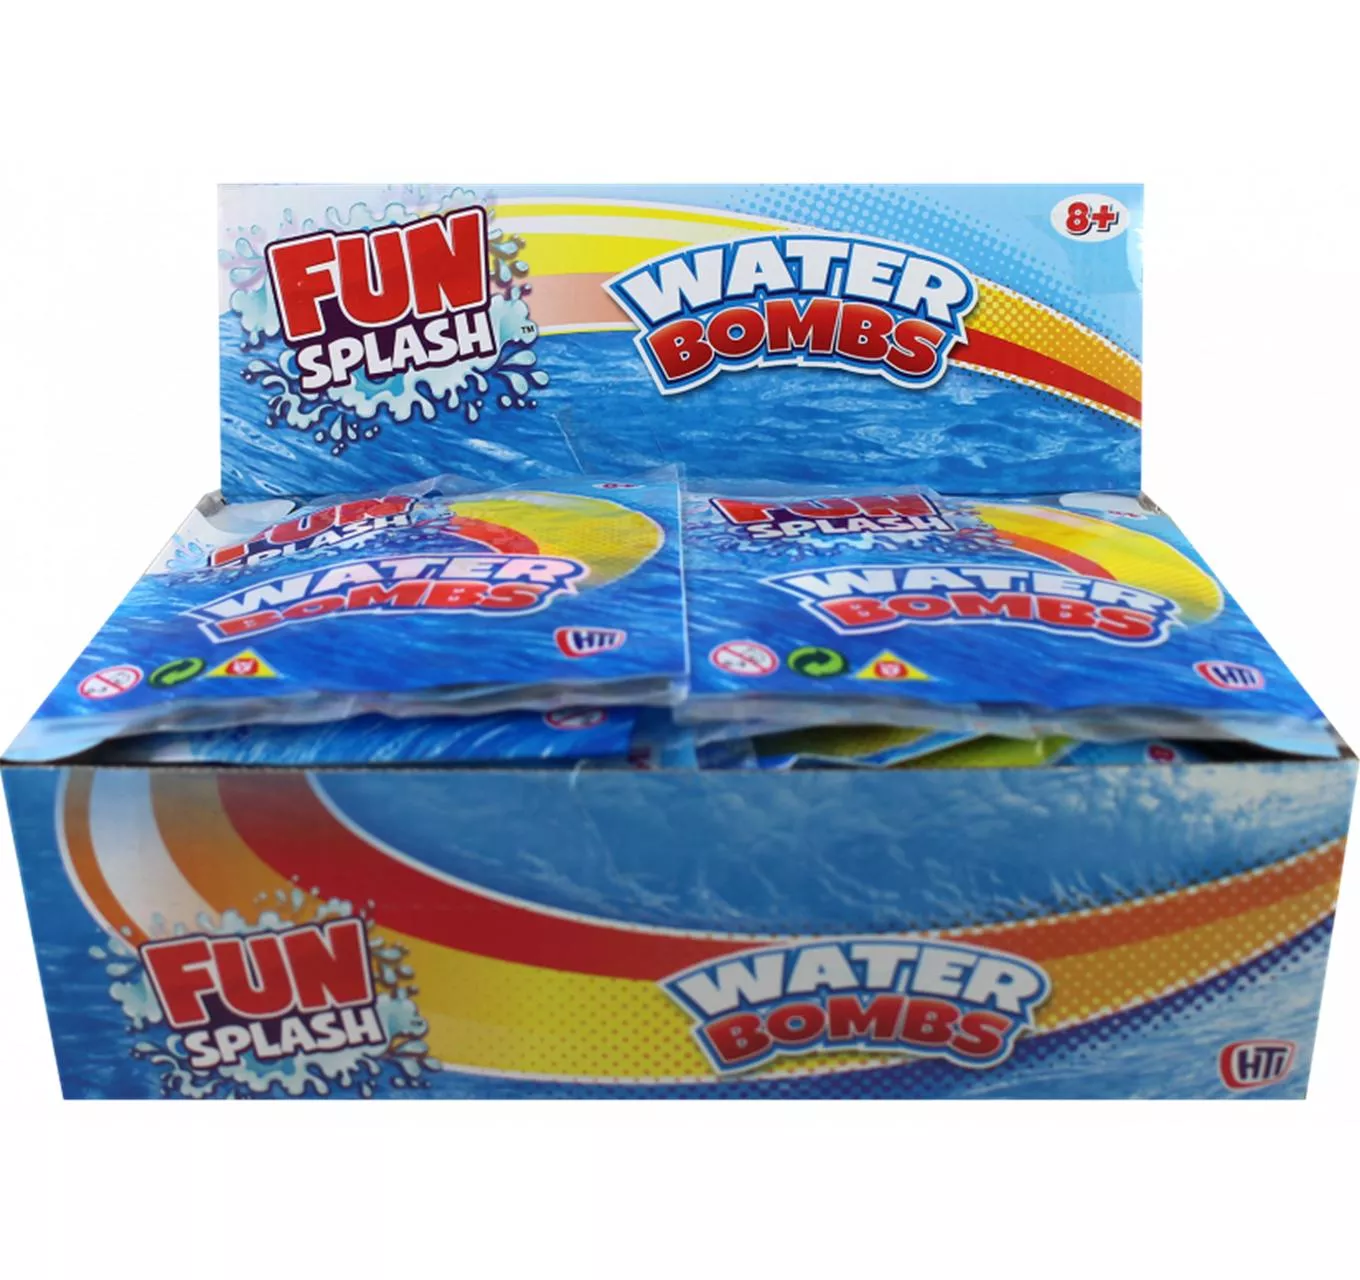 Fun Splash Water Bombs